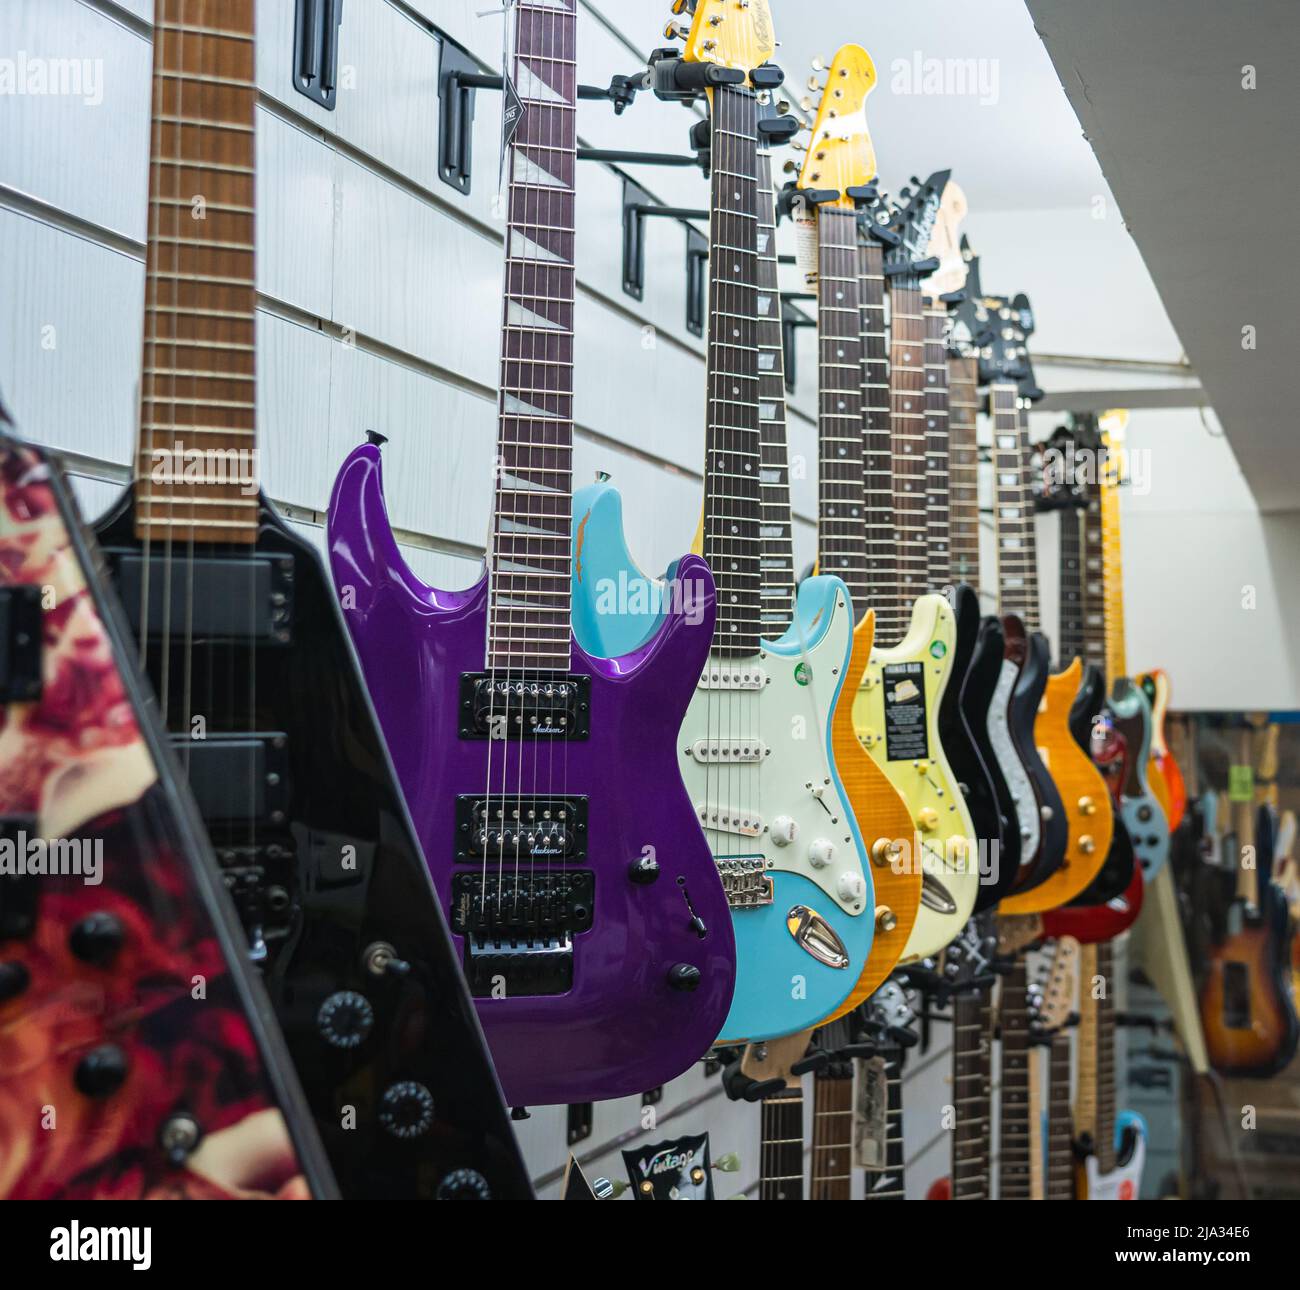 Una collezione di chitarre elettriche colorate in mostra presso un negozio di musica. Foto Stock